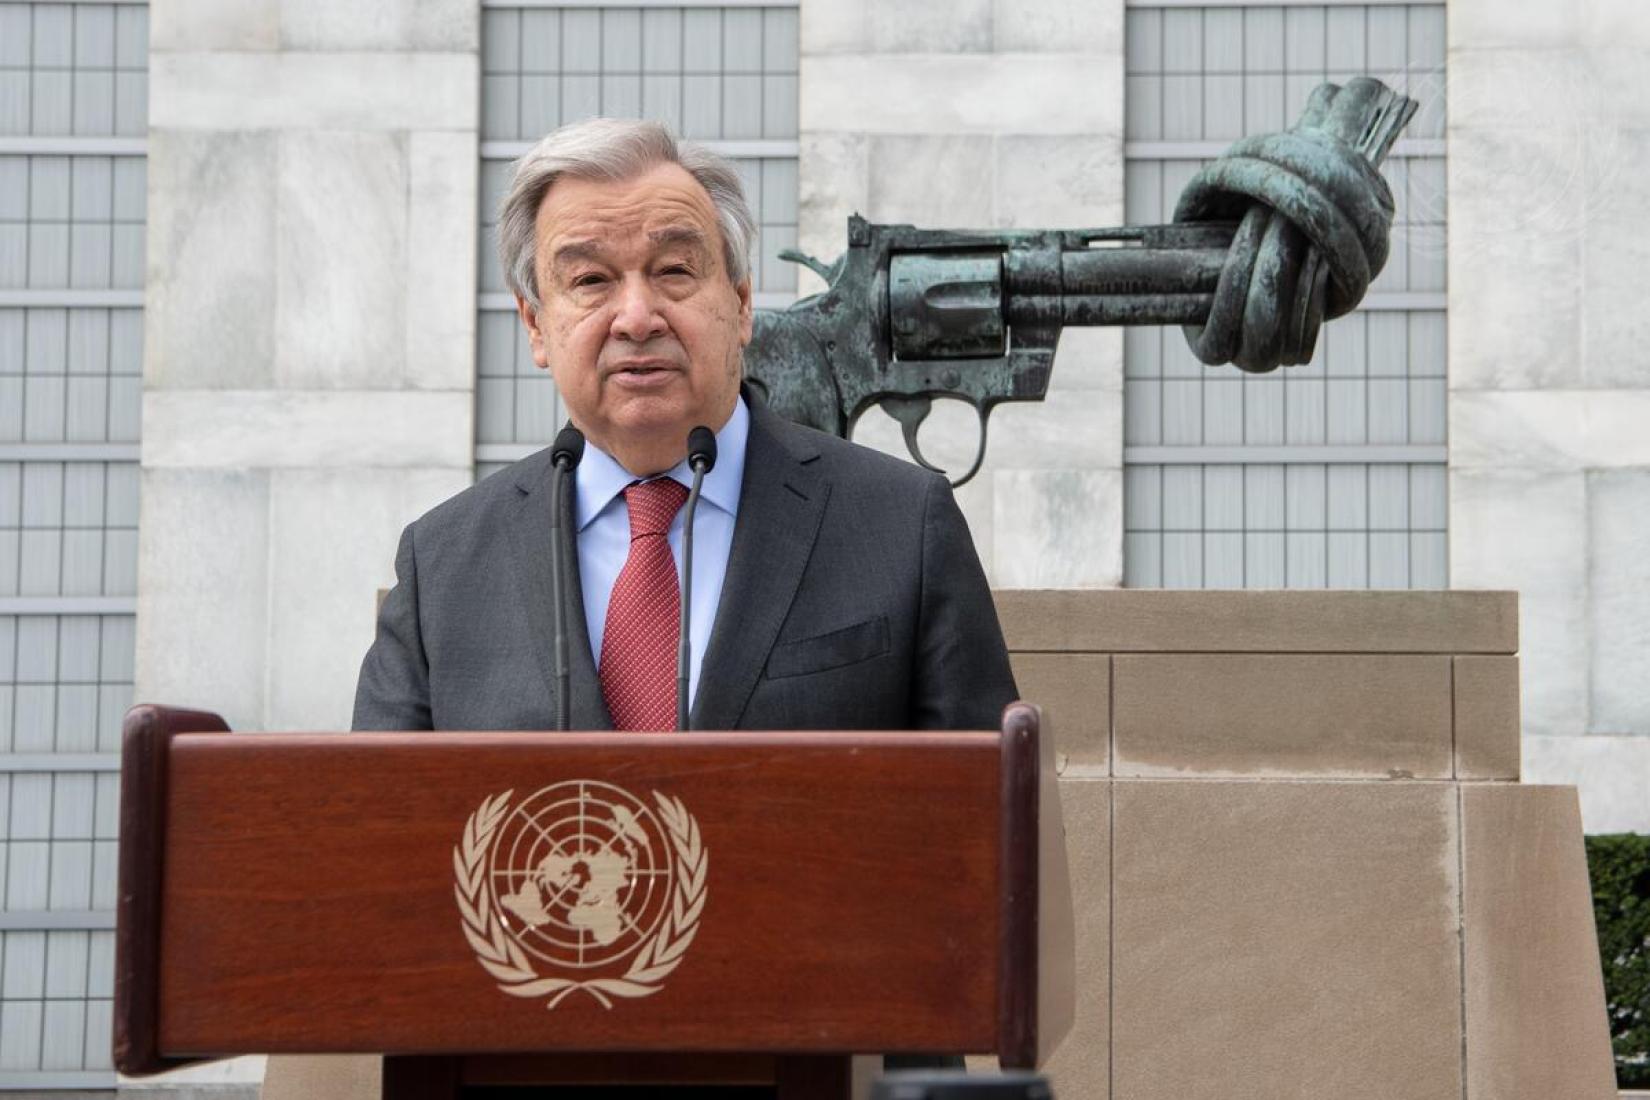 Secretário-geral da ONU participa de coletiva de imprensa em frente ao monumento "Não-Violência" na sede das Nações Unidas em Nova Iorque. 